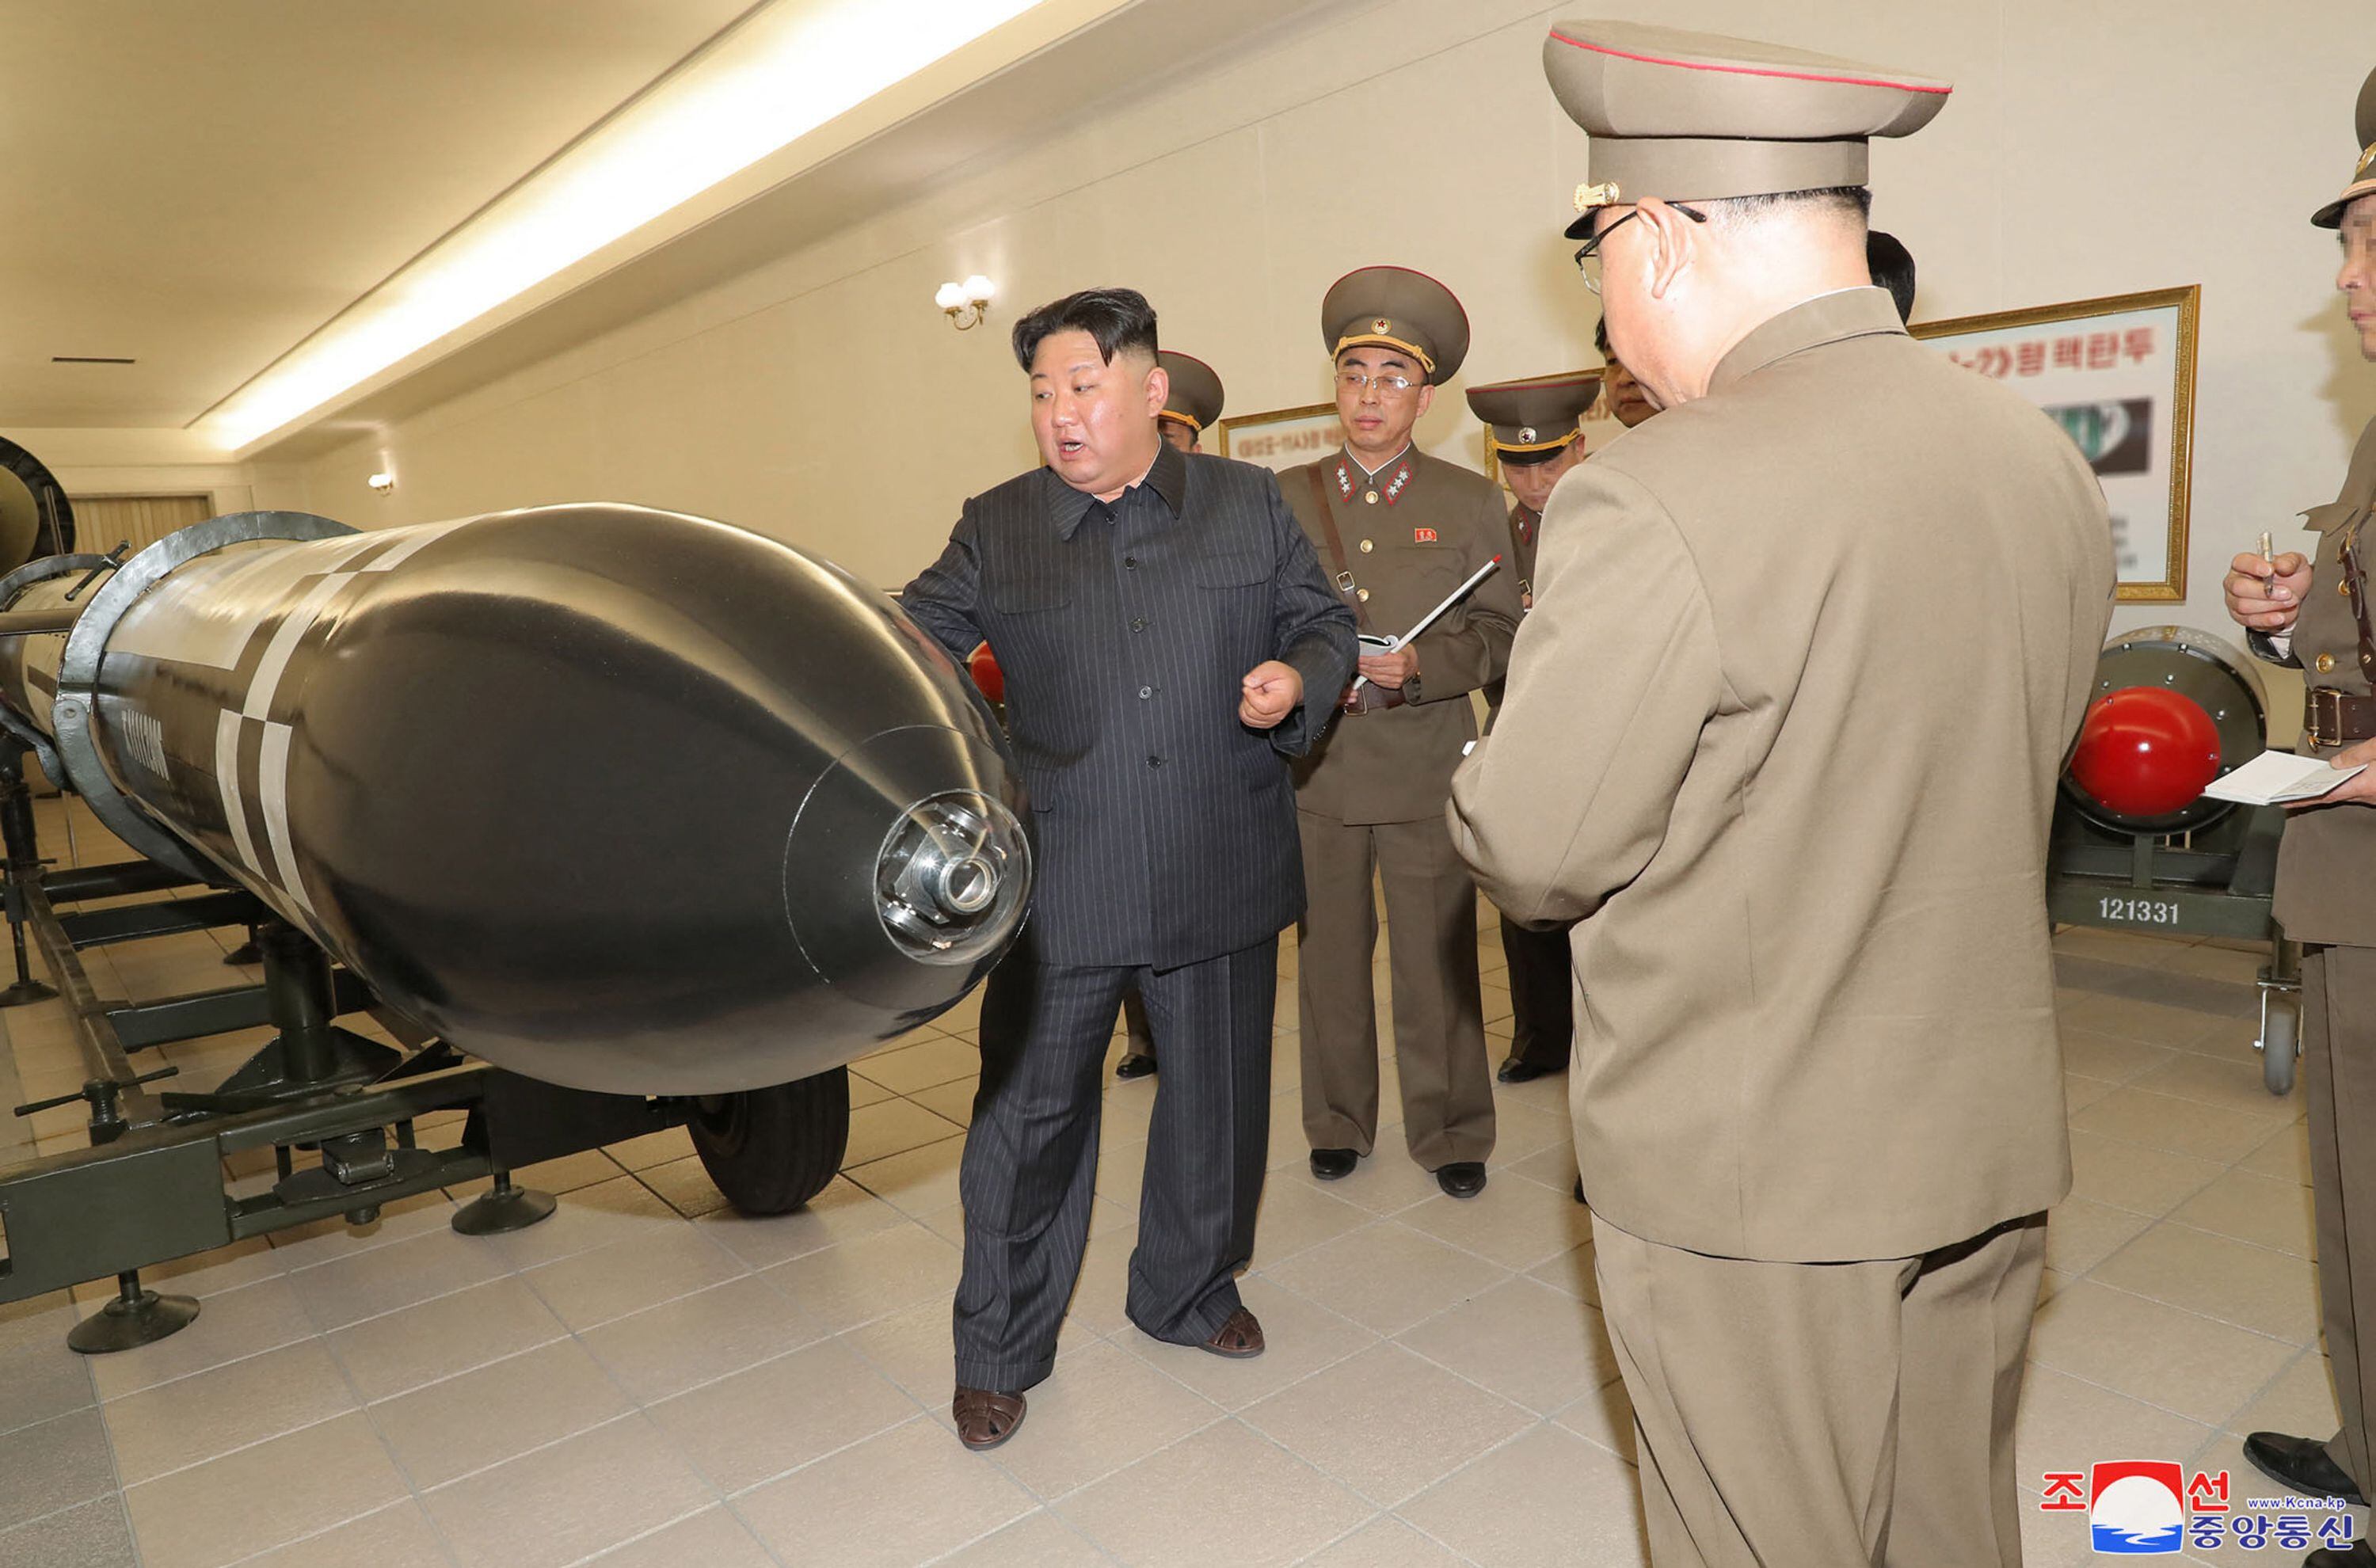 El líder norcoreano Kim Jong Un (izquierda) inspeccionó, en el pasado mes de marzo, un proyecto de armamento nuclear en un lugar desconocido en Corea del Norte.